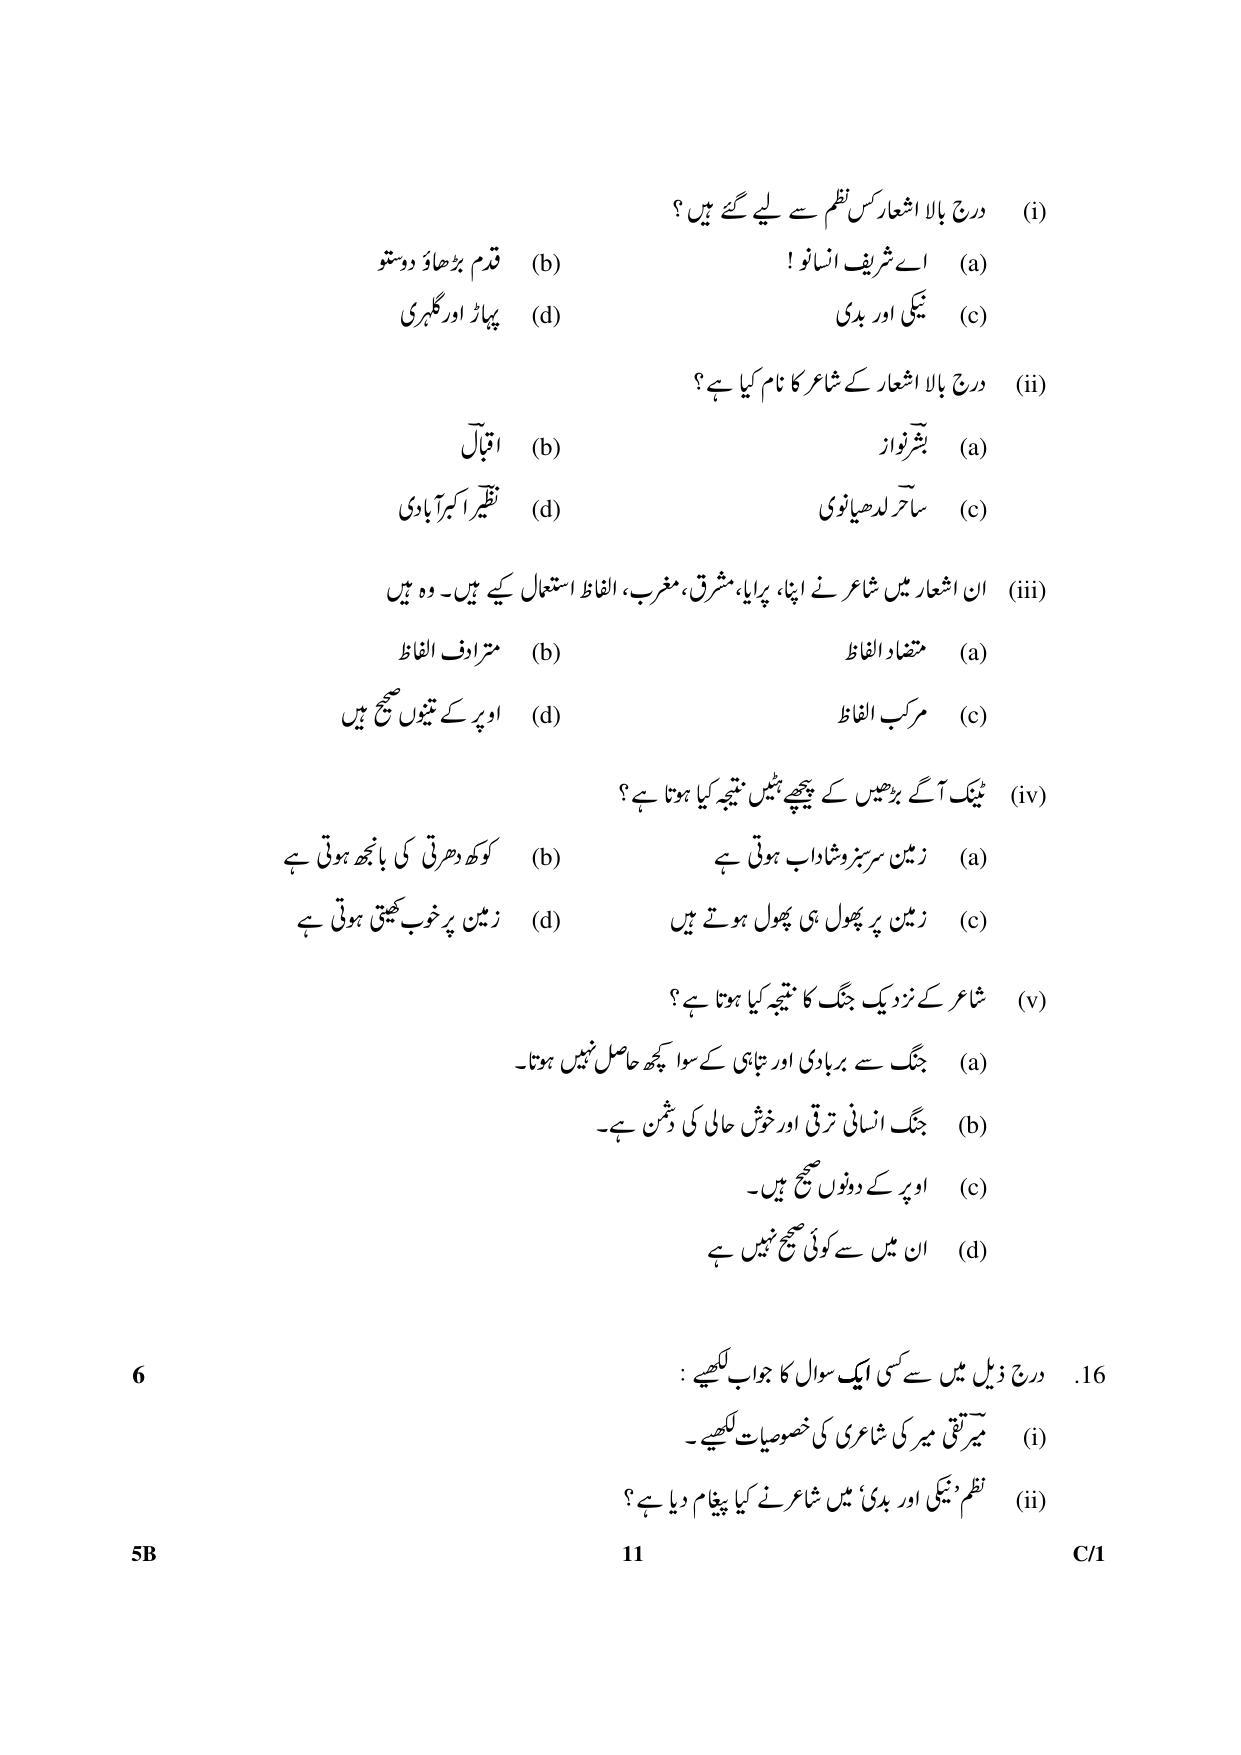 CBSE Class 10 5B Urdu (Course B) 2018 Compartment Question Paper - Page 11